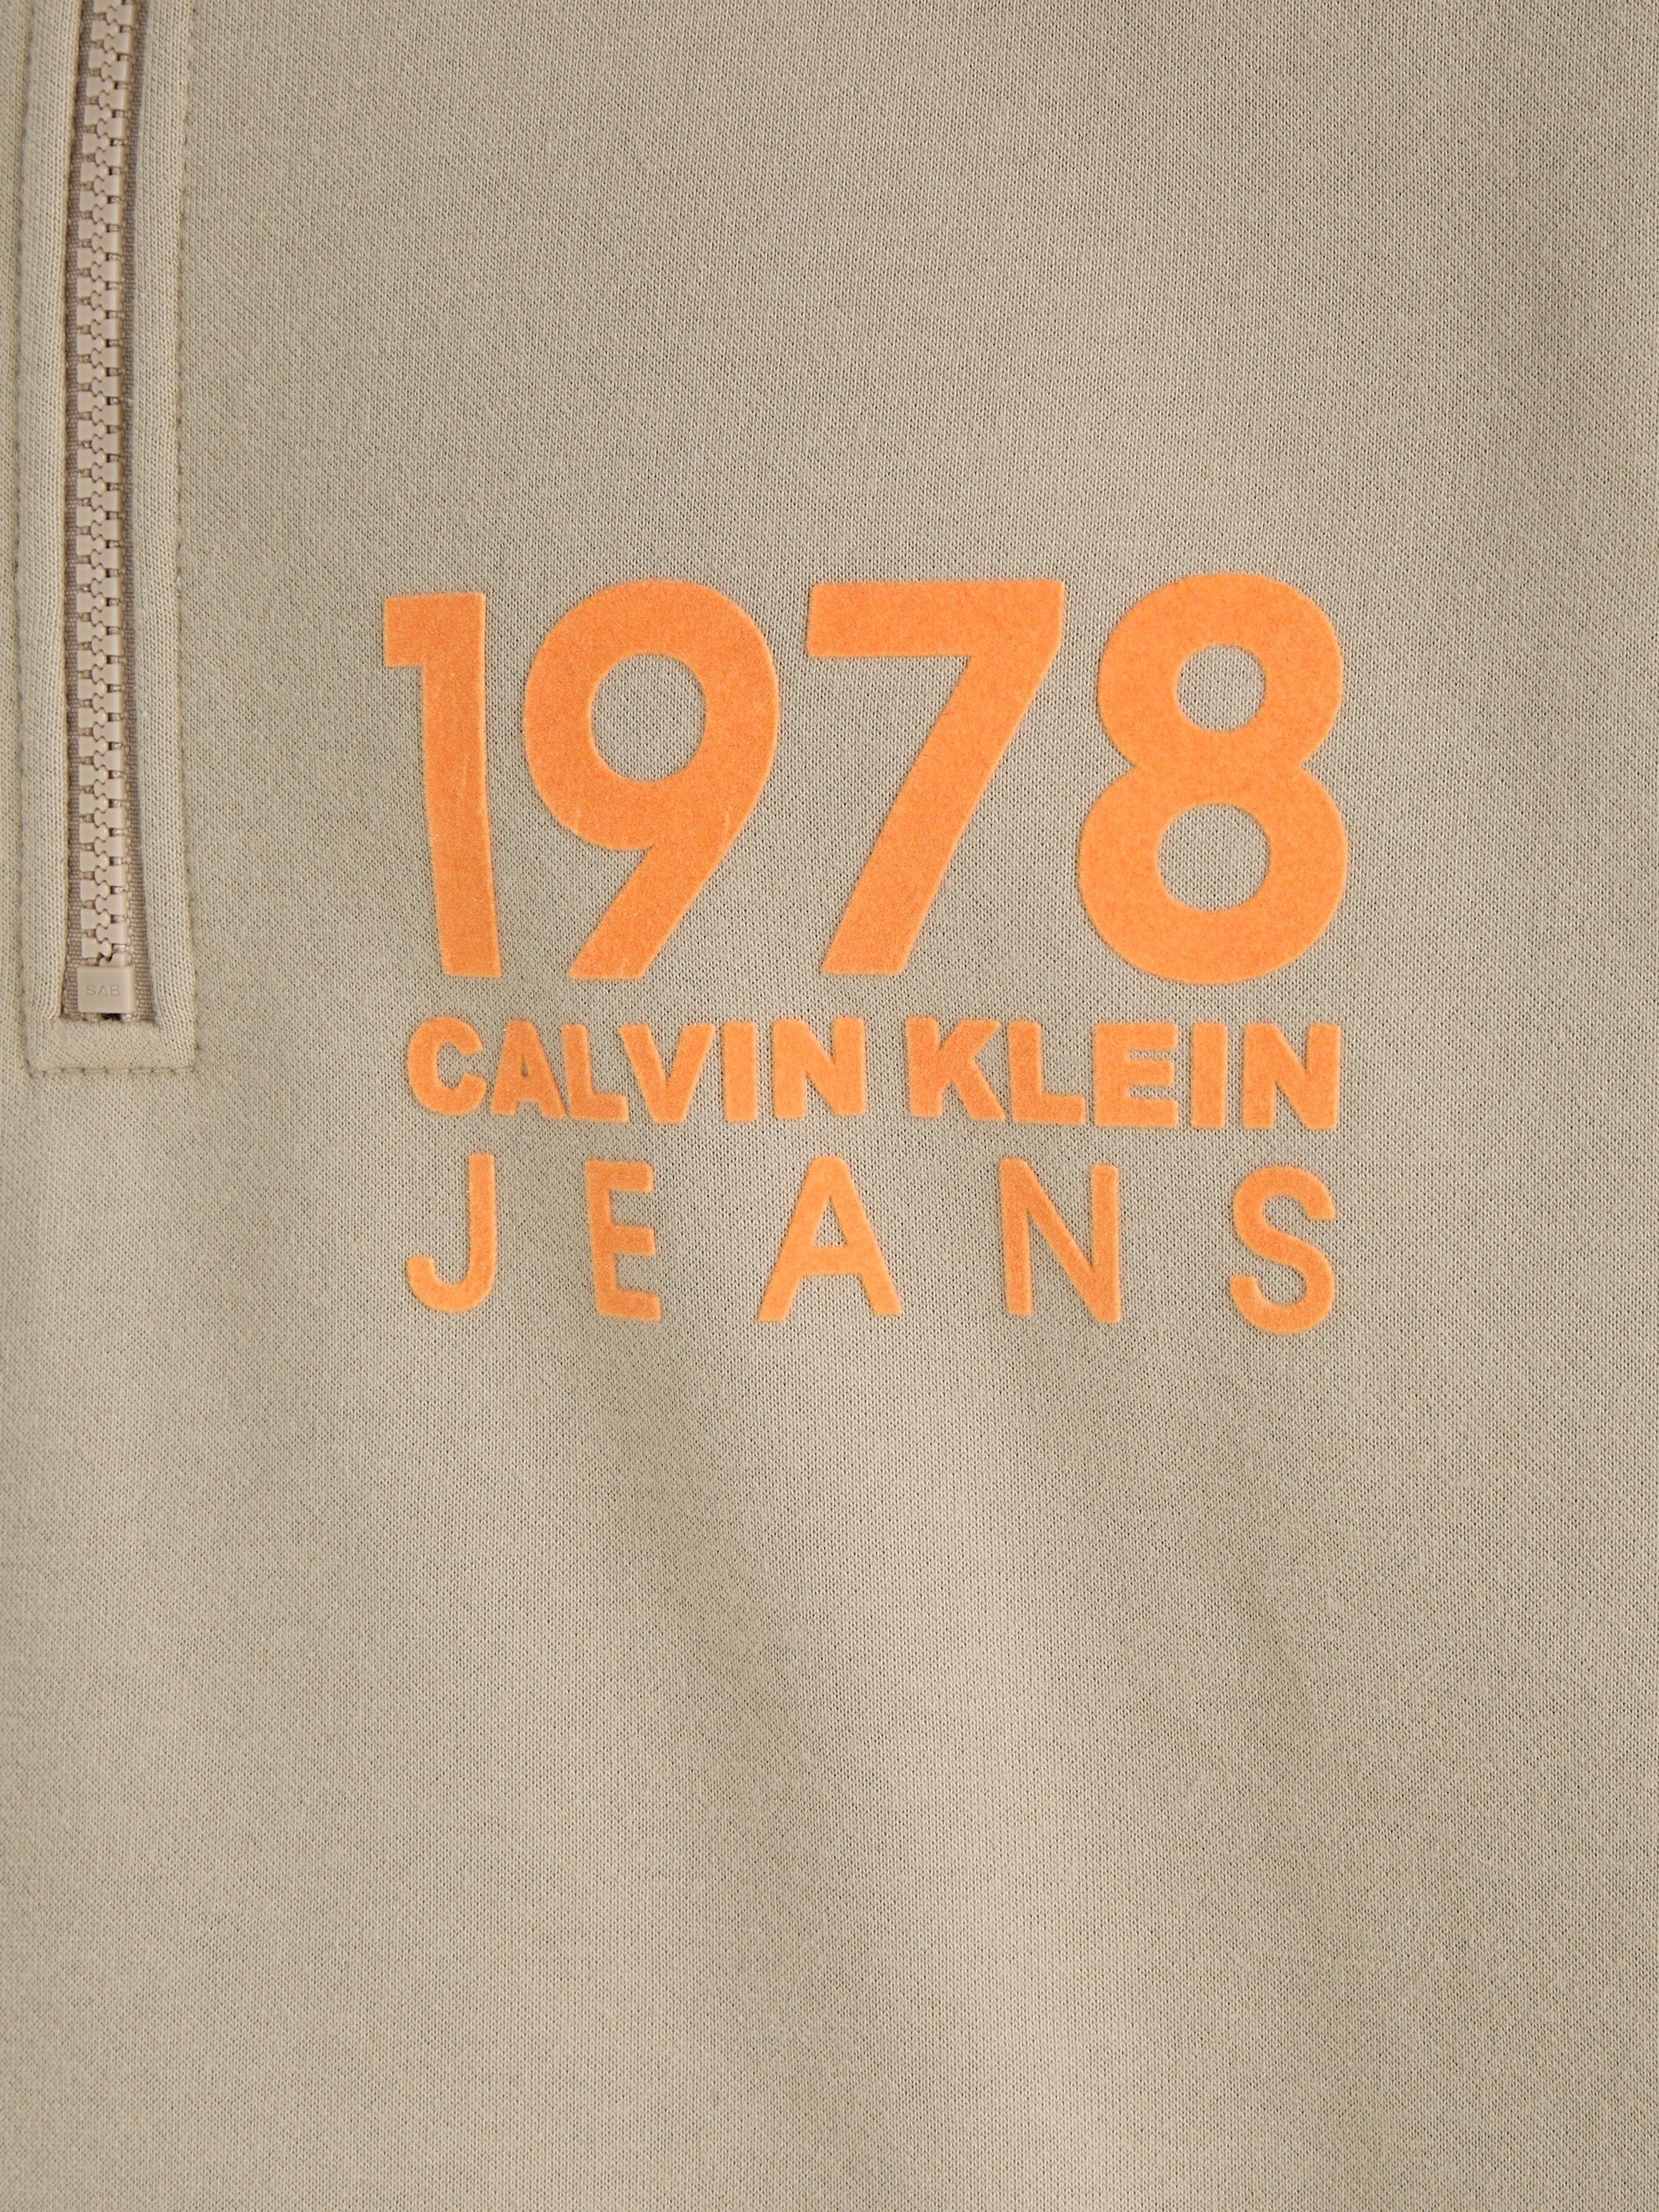 ZIP Klein Calvin LOGO HALF Jeans FLOCK 1978 Sweatshirt